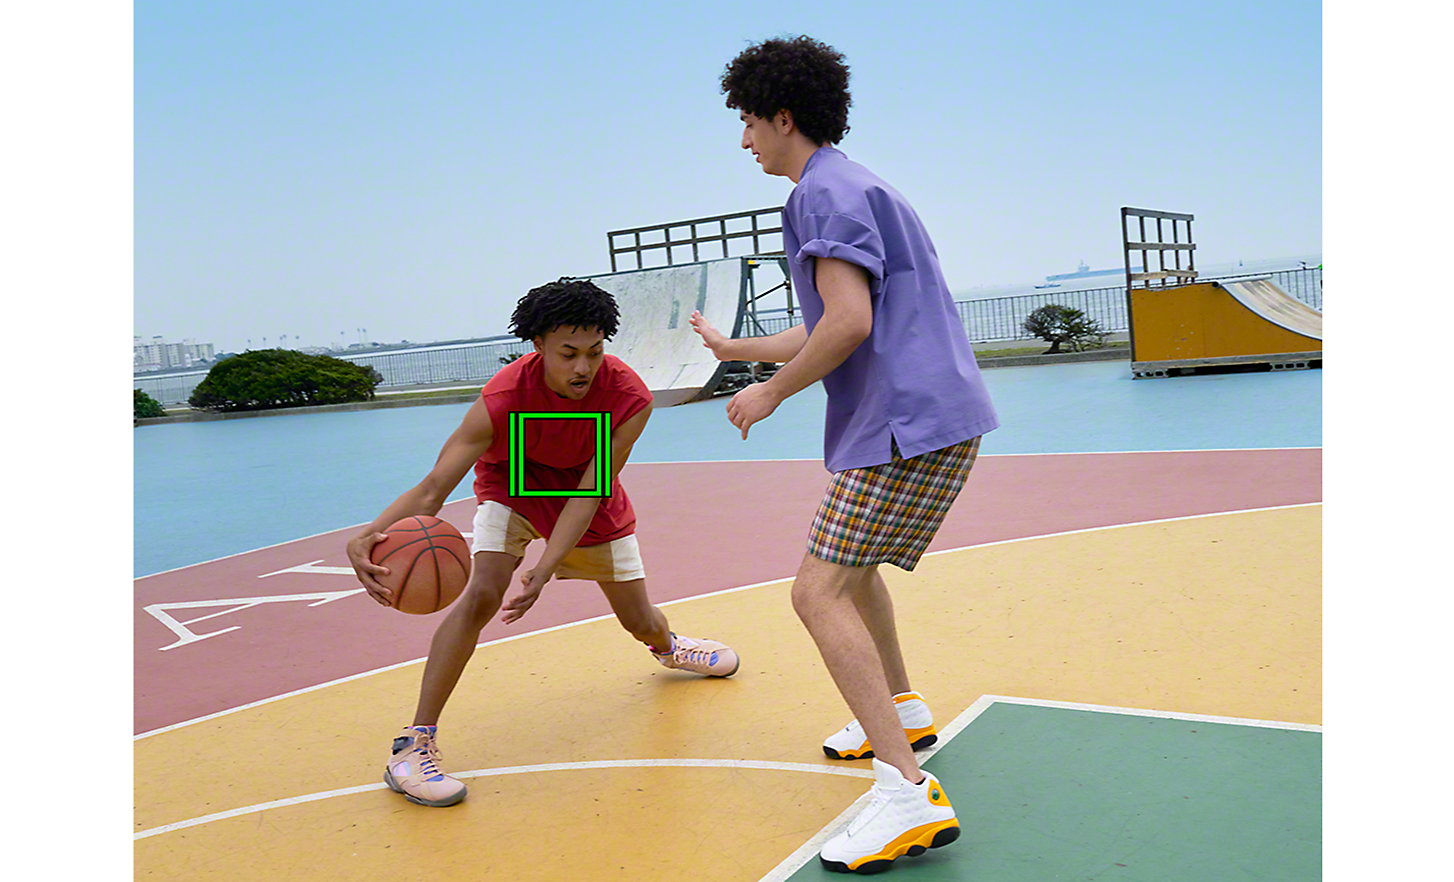 Un match de basket à deux, un carré vert qui représente le suivi en temps réel